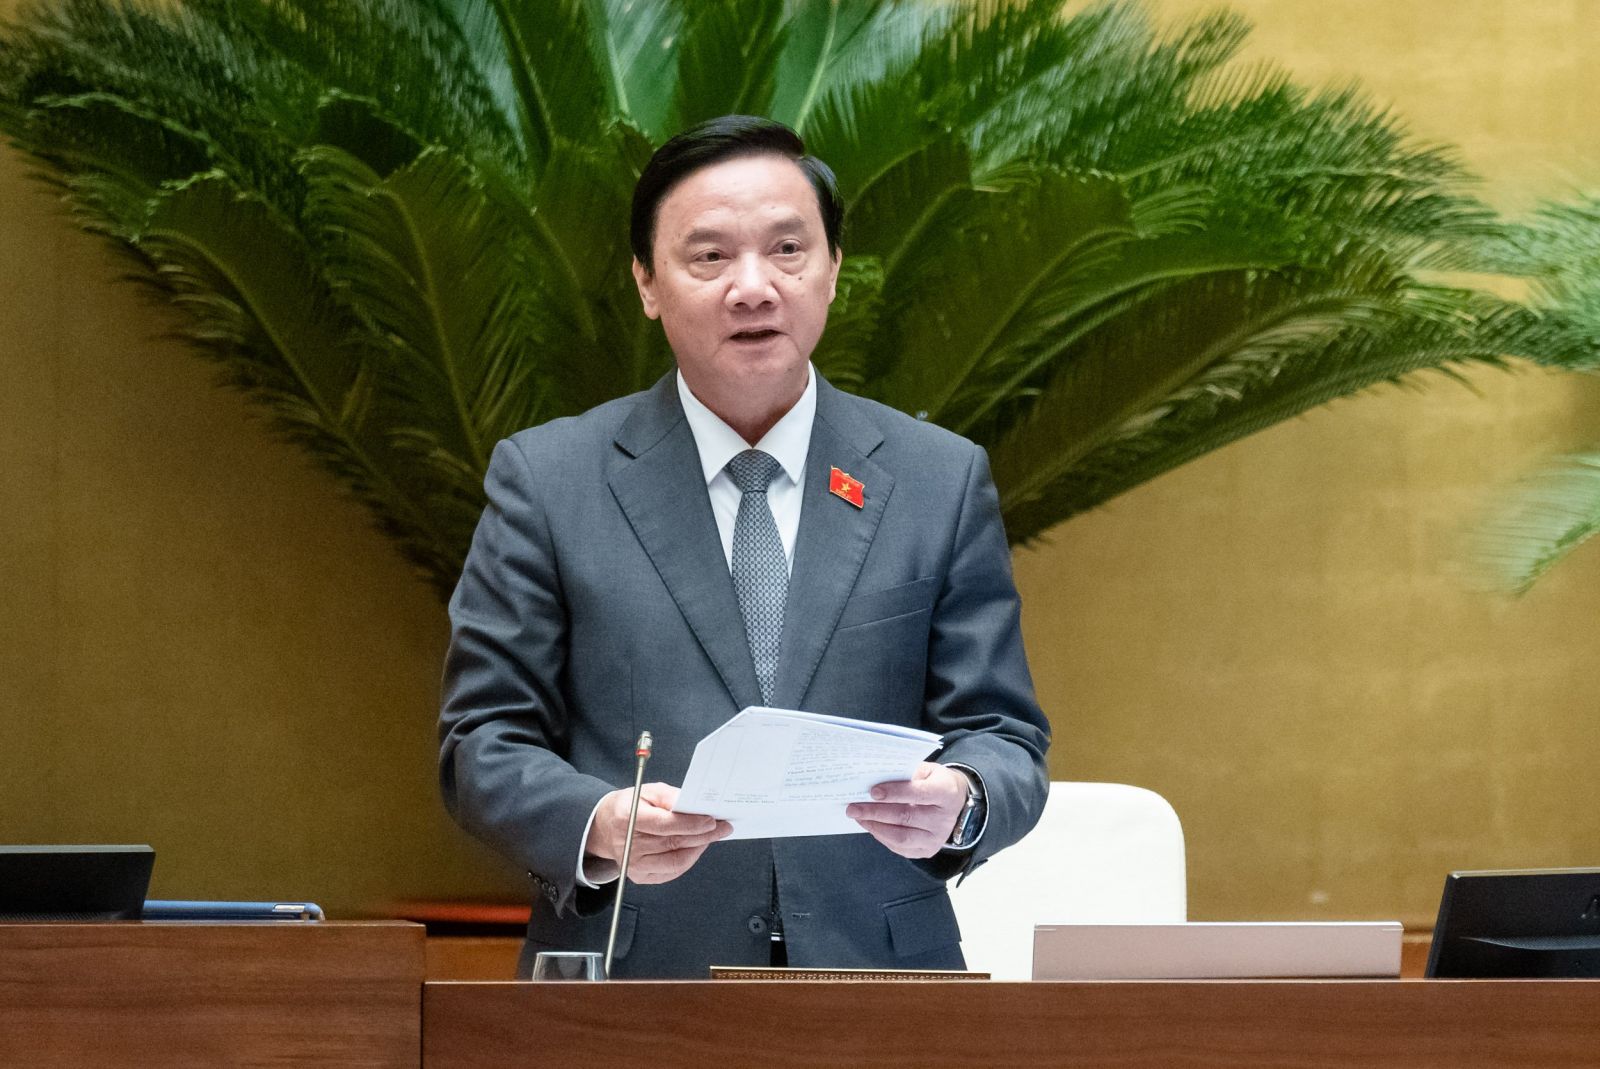 Phó Chủ tịch Quốc hội Nguyễn Khắc Định: Nâng cao trách nhiệm trong việc tìm ra các giải pháp khắc phục những tồn tại, hạn chế